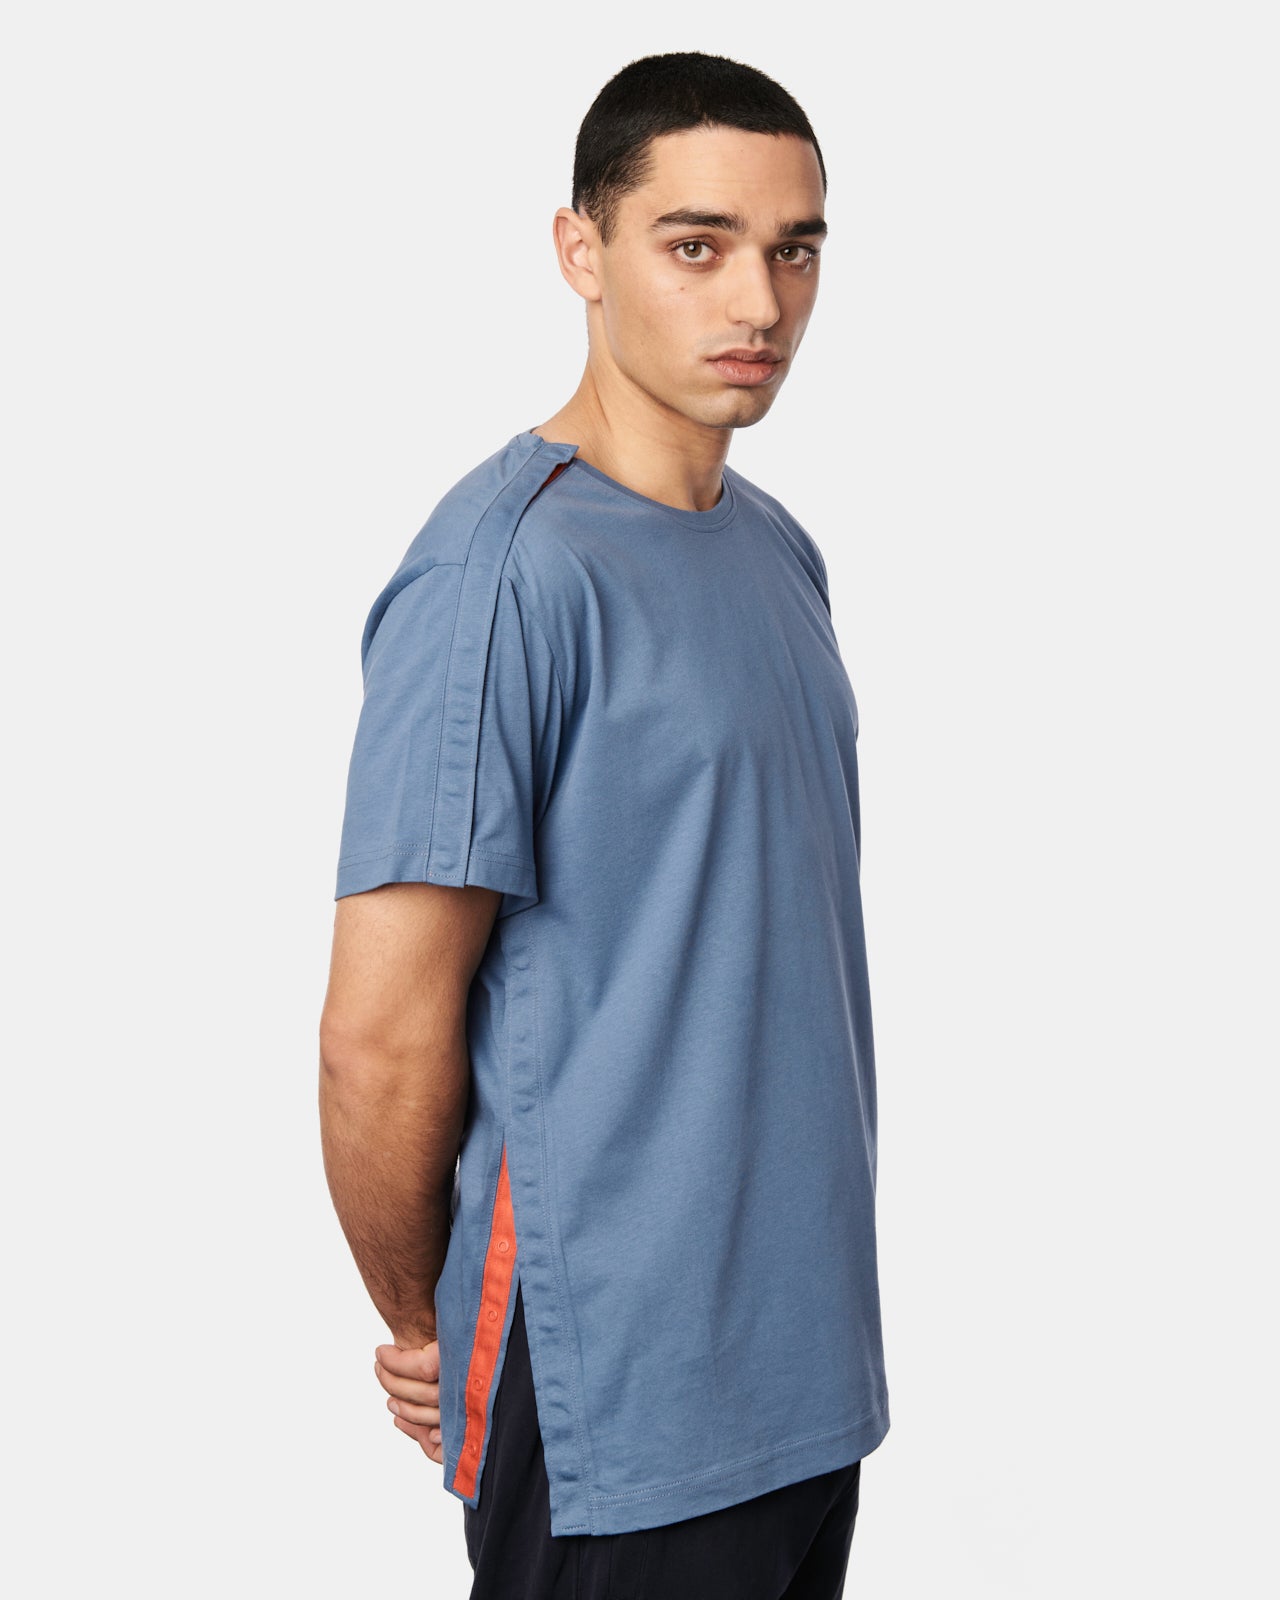 Rückenansicht des Herren T-Shirts Harri in der Farbe Finian Blue.